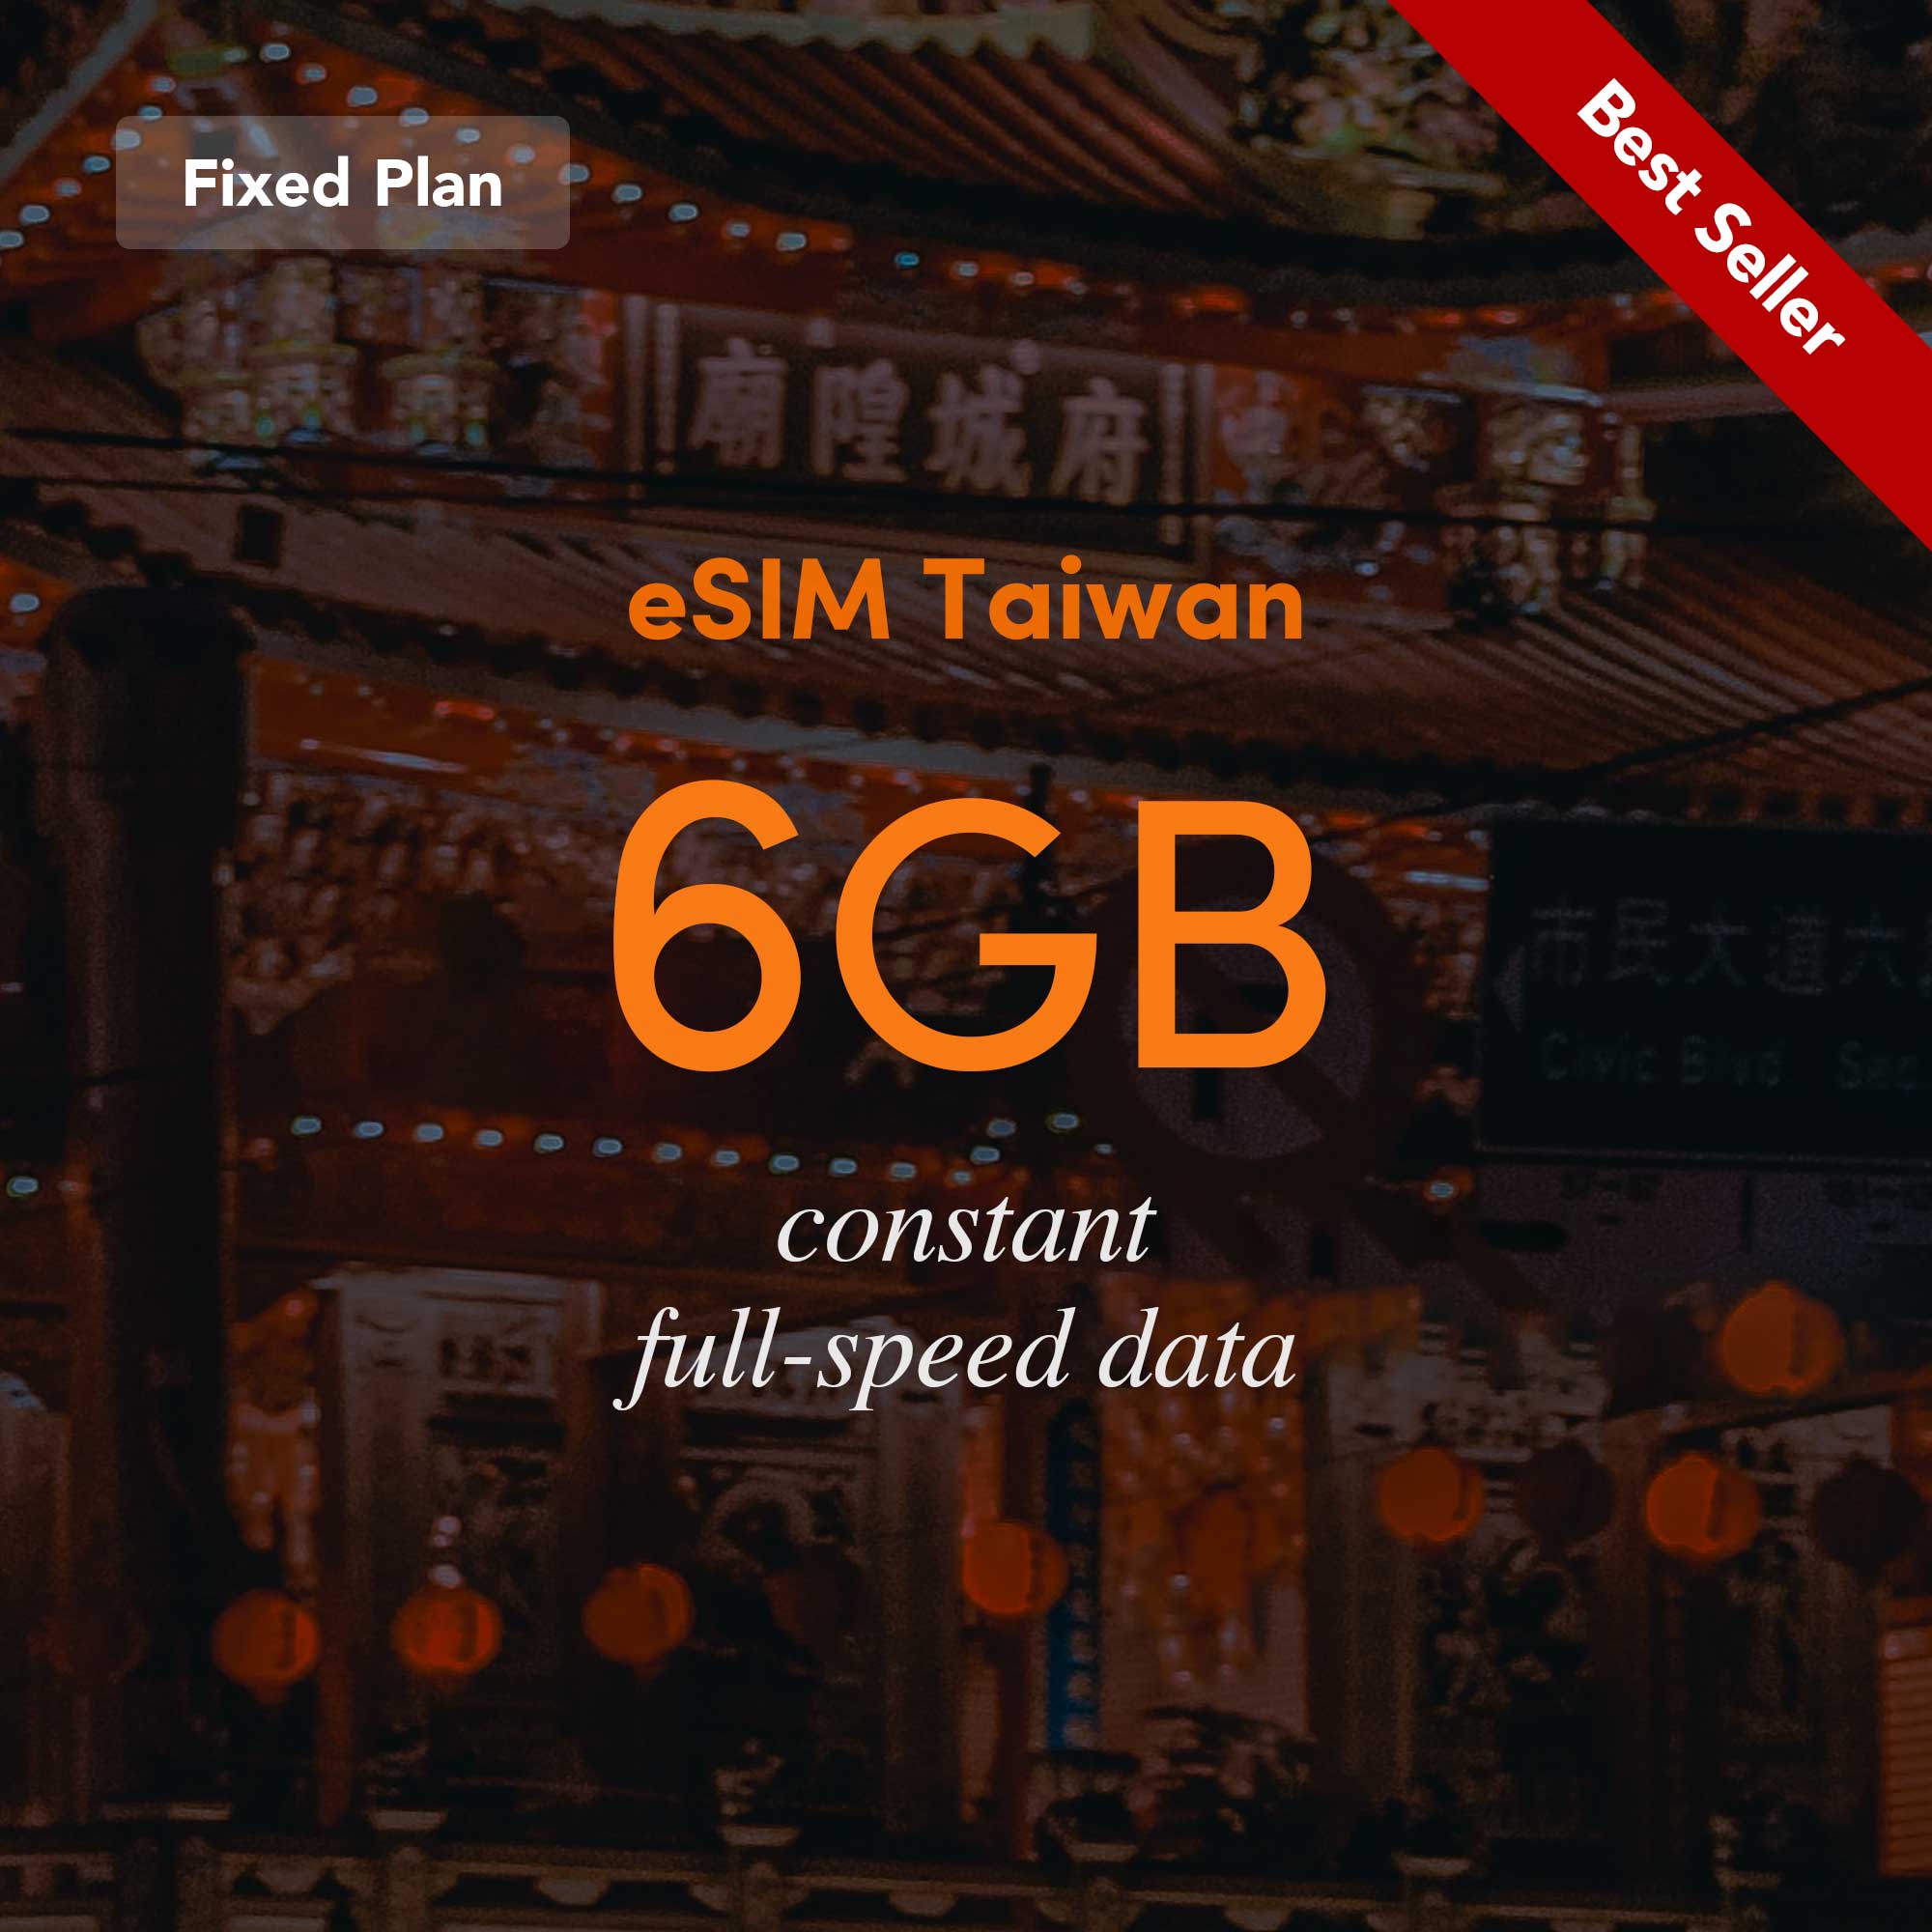 eSIM Taiwan Fixed Plan 6GB